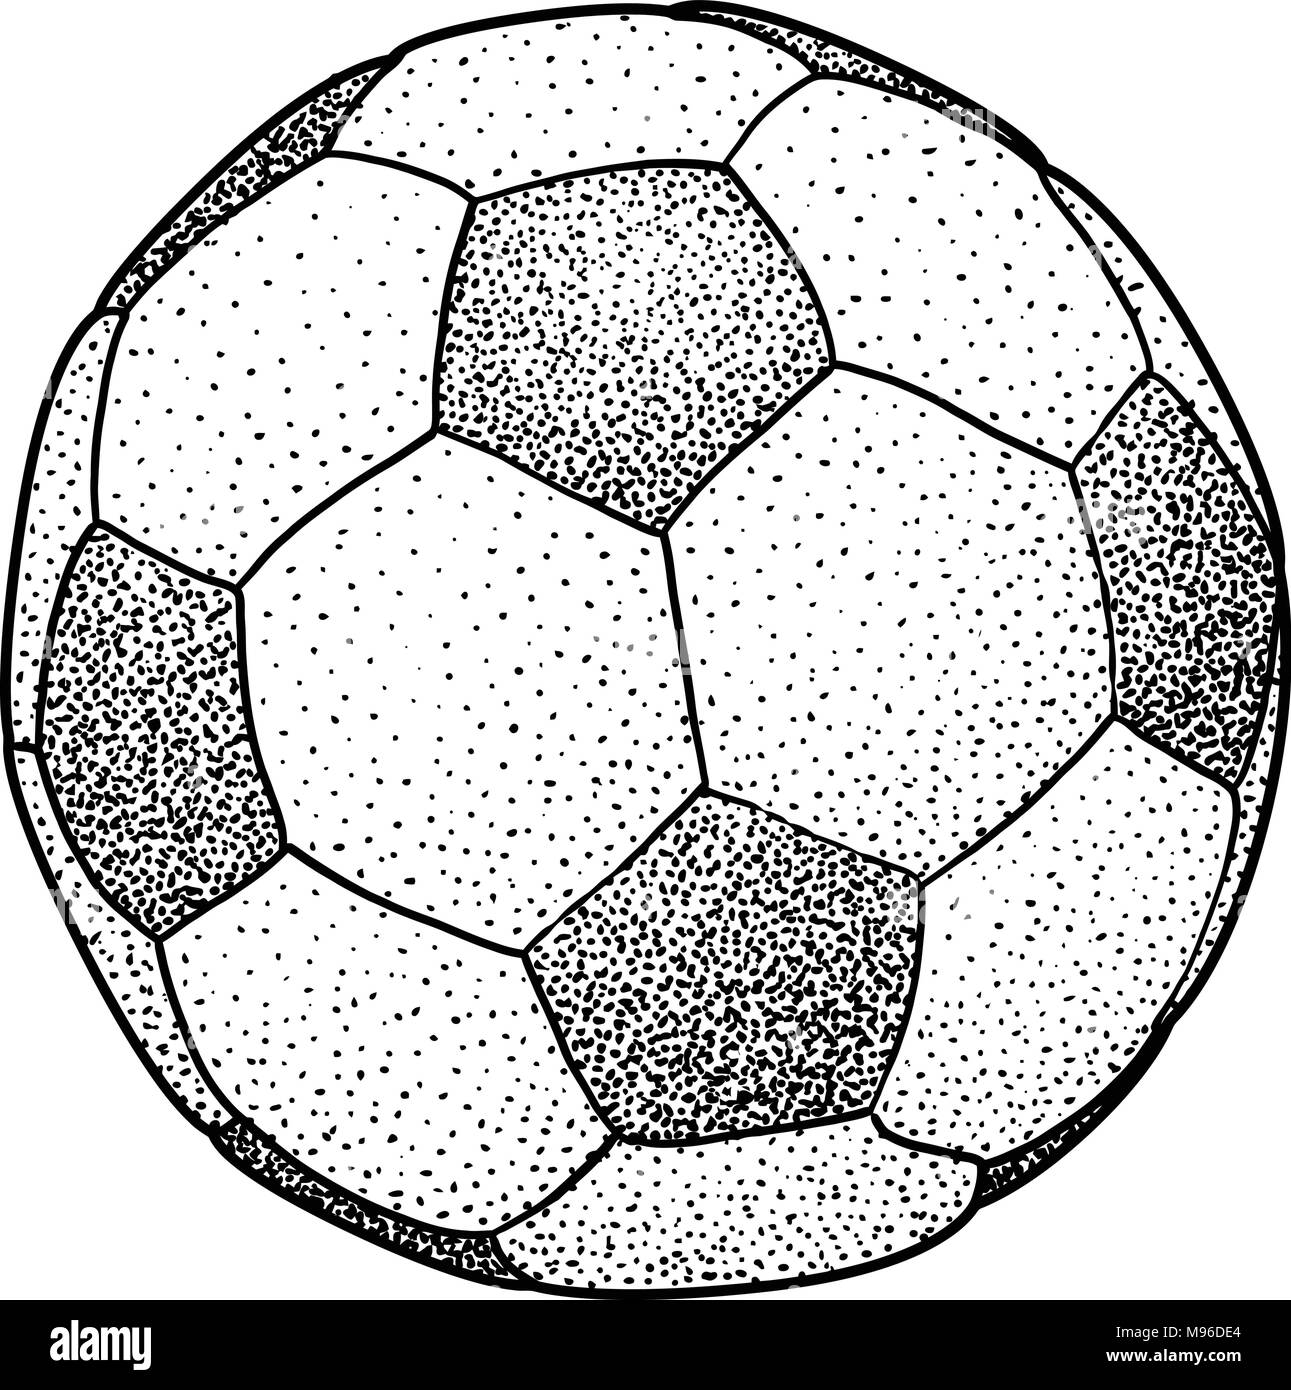 Ballon de soccer illustration, dessin, gravure, encre, dessin au trait, vector Illustration de Vecteur